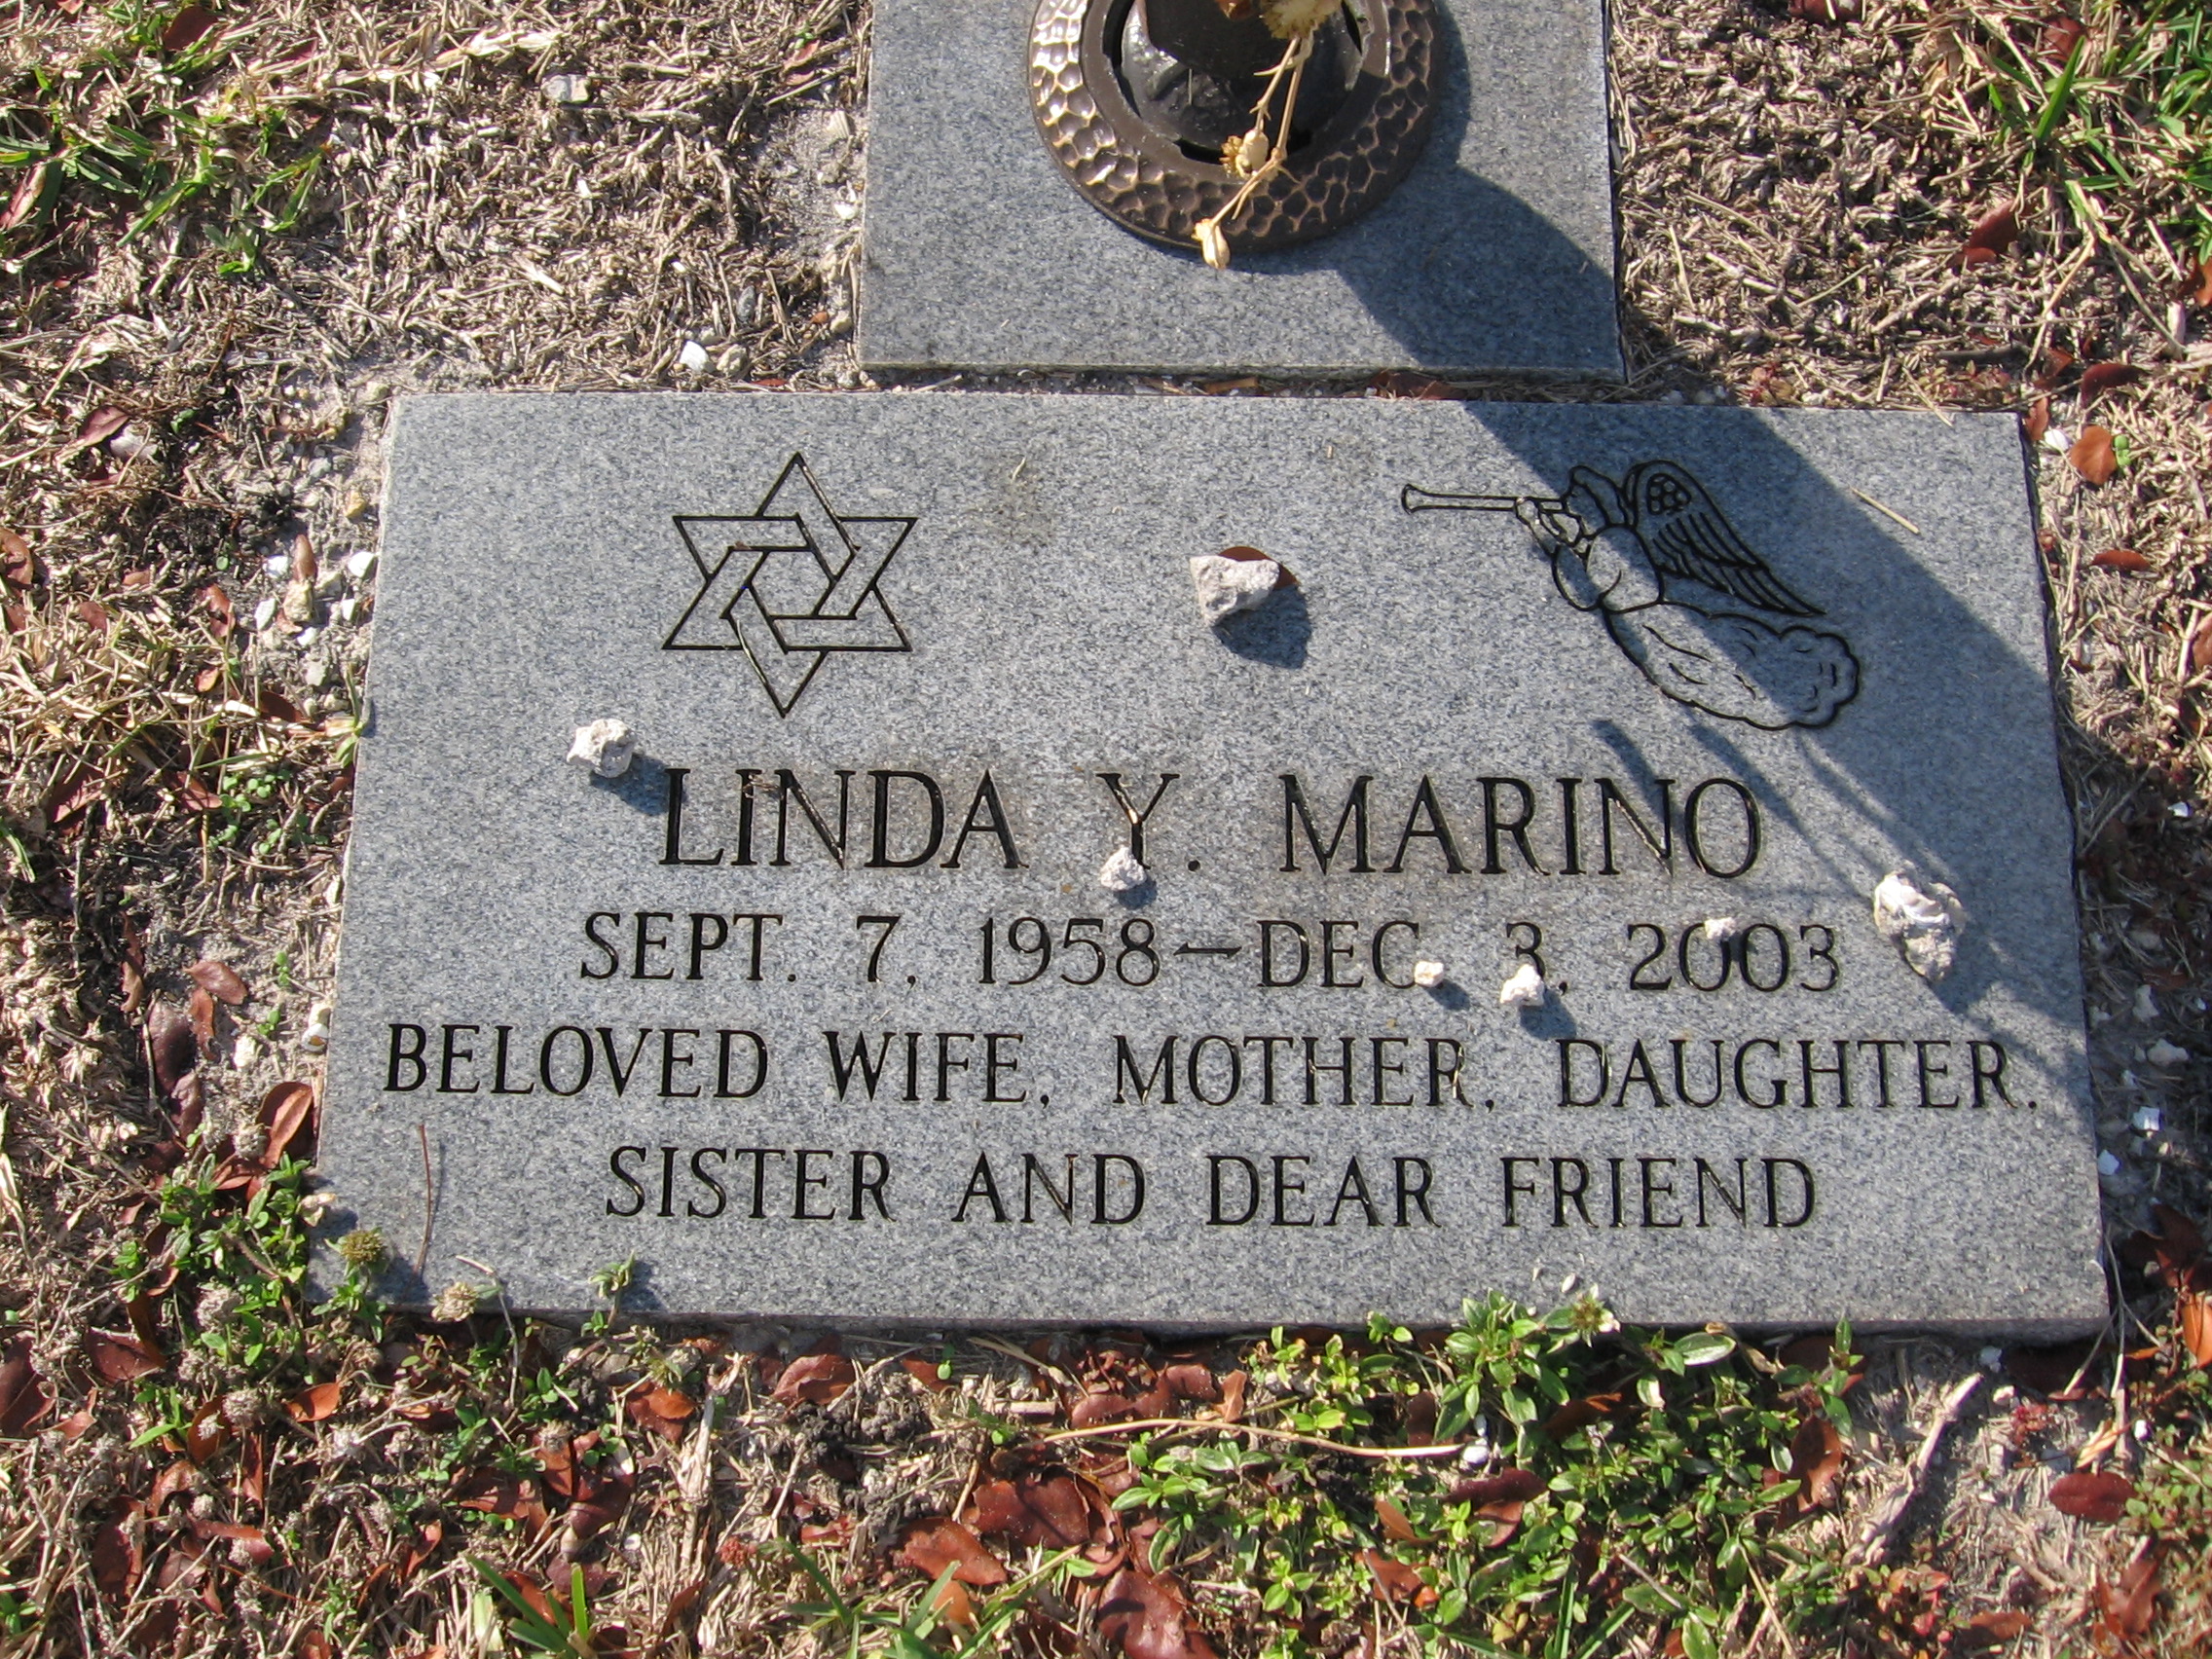 Linda Y Marino